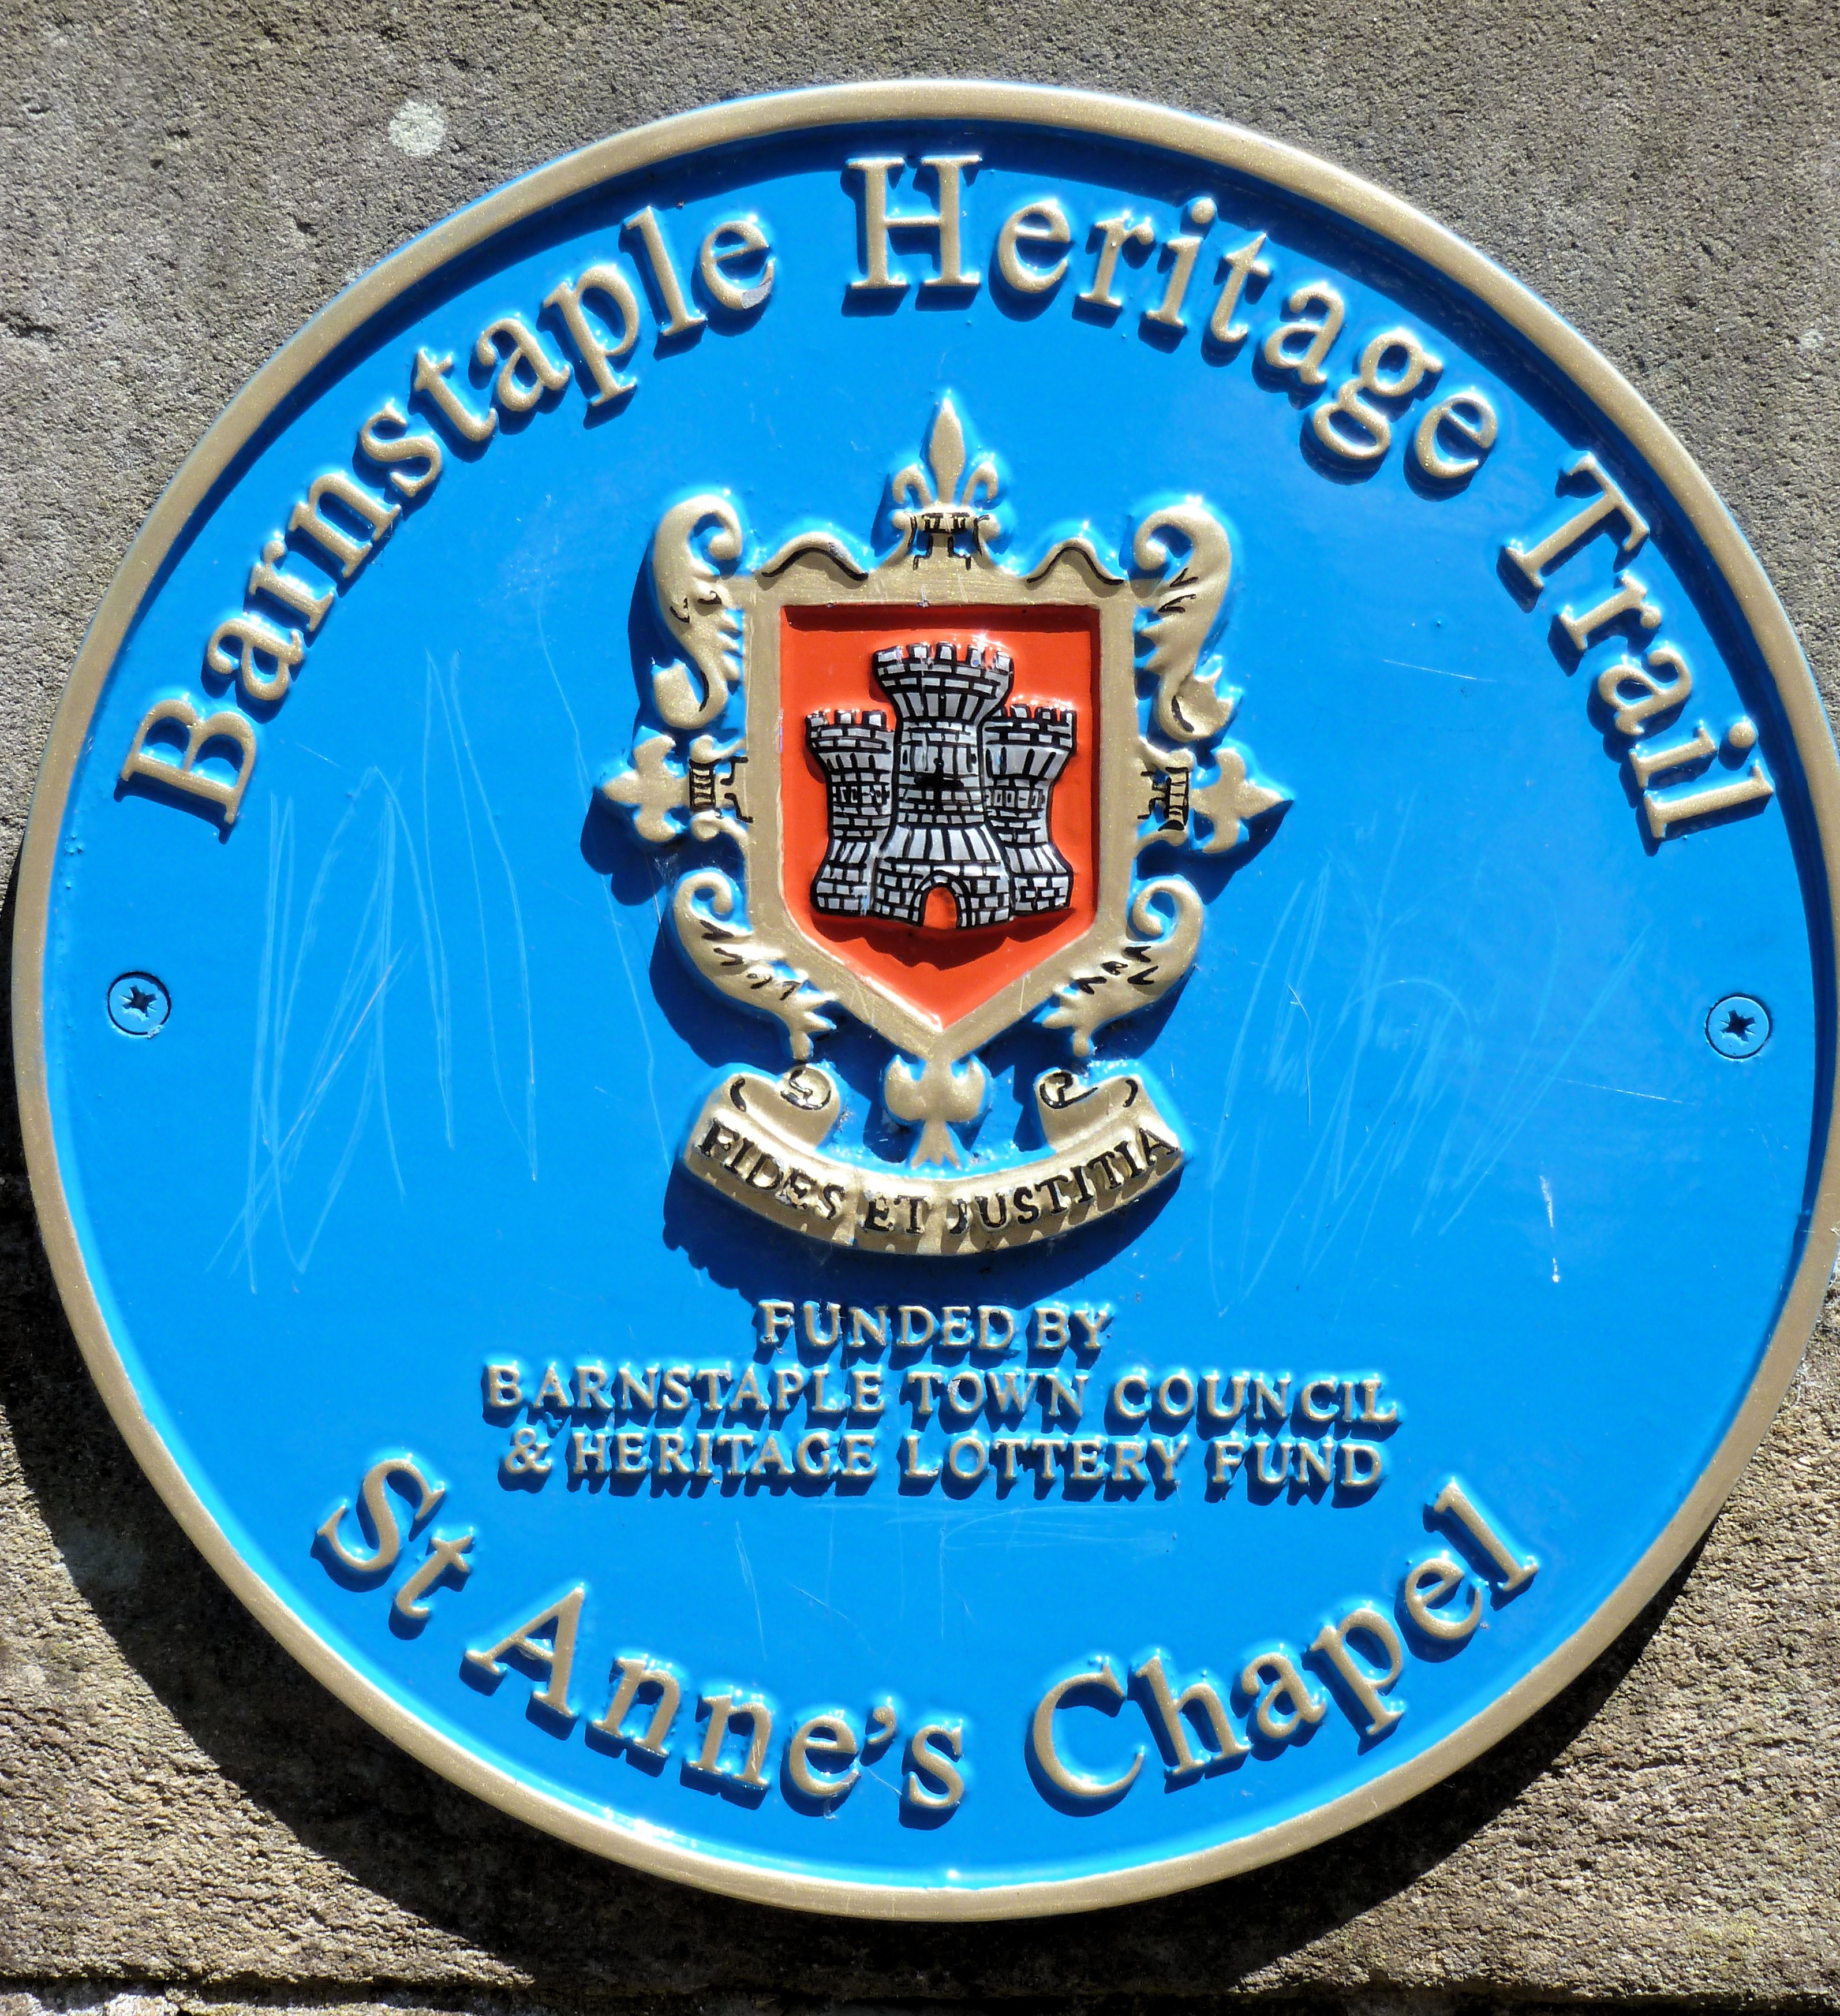 Barnstaple historical marker for St. Anne's Chapel. (281508 bytes)